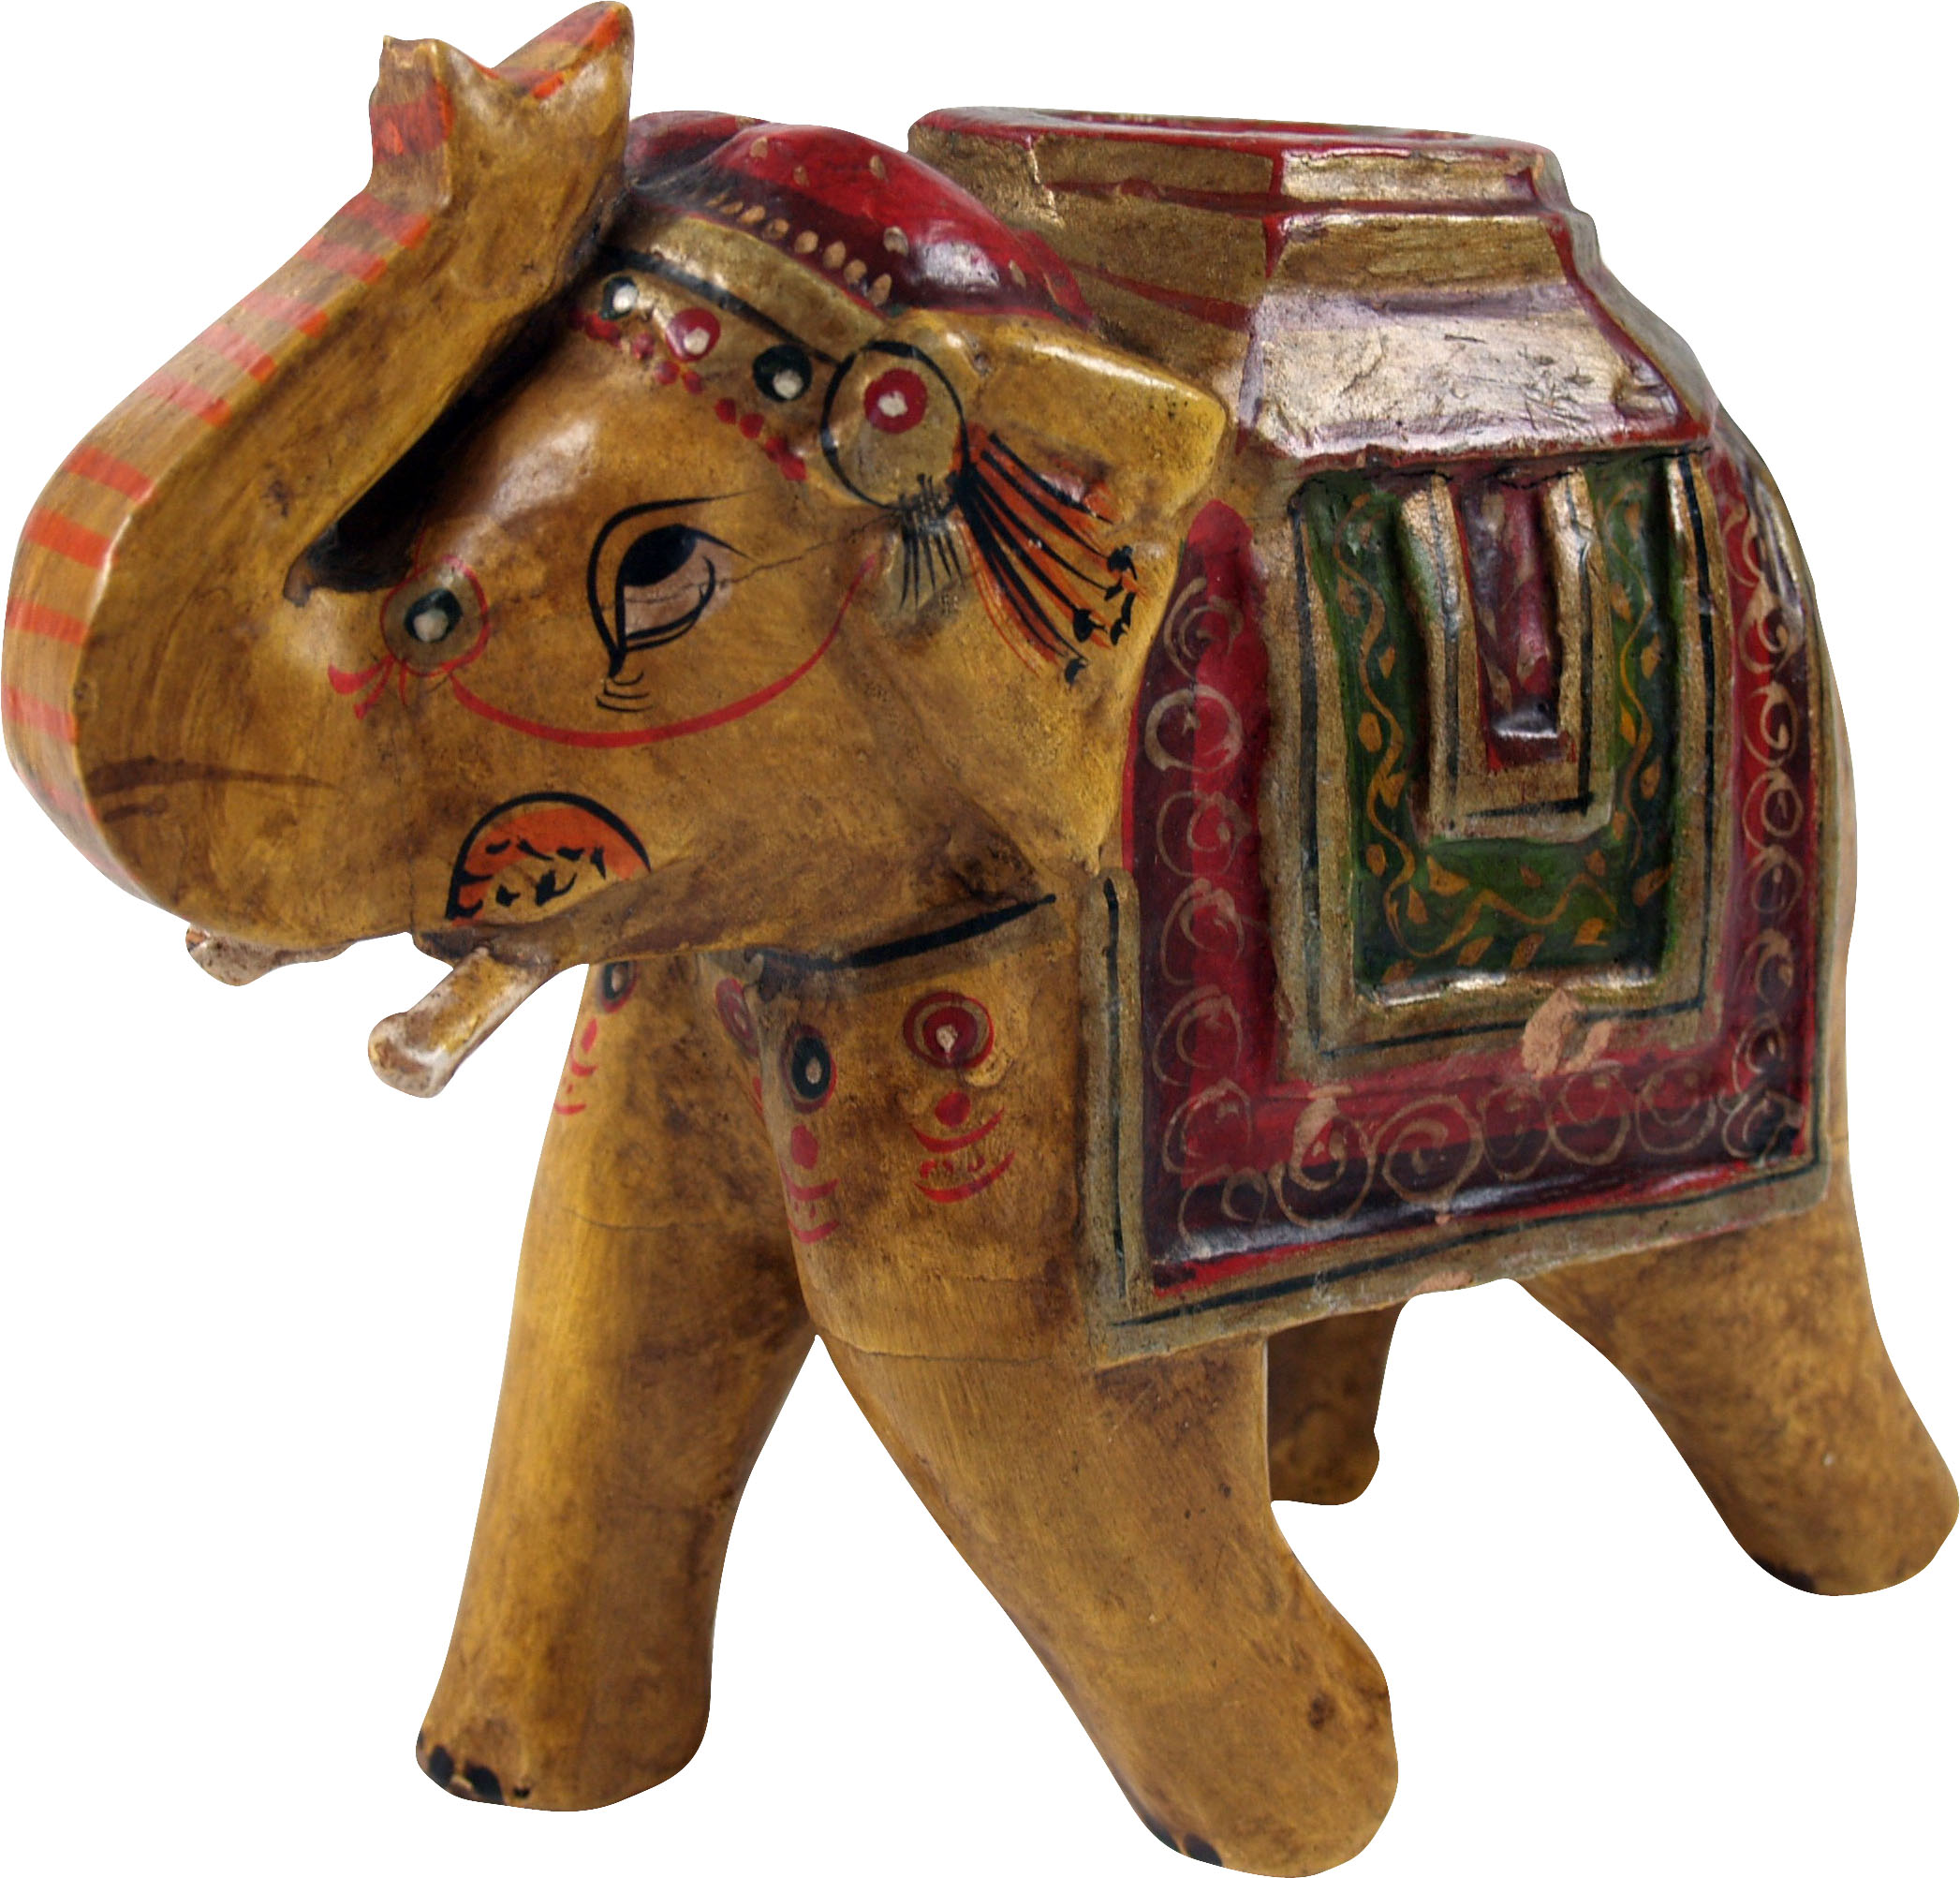 EIN Elefant in unterschiedlichen Größen erhältlich Deko-Elefant 12 cm Holz-Elefant mit erhobenen Rüssel Kunsthandwerk Asien 1 Elefant laufend